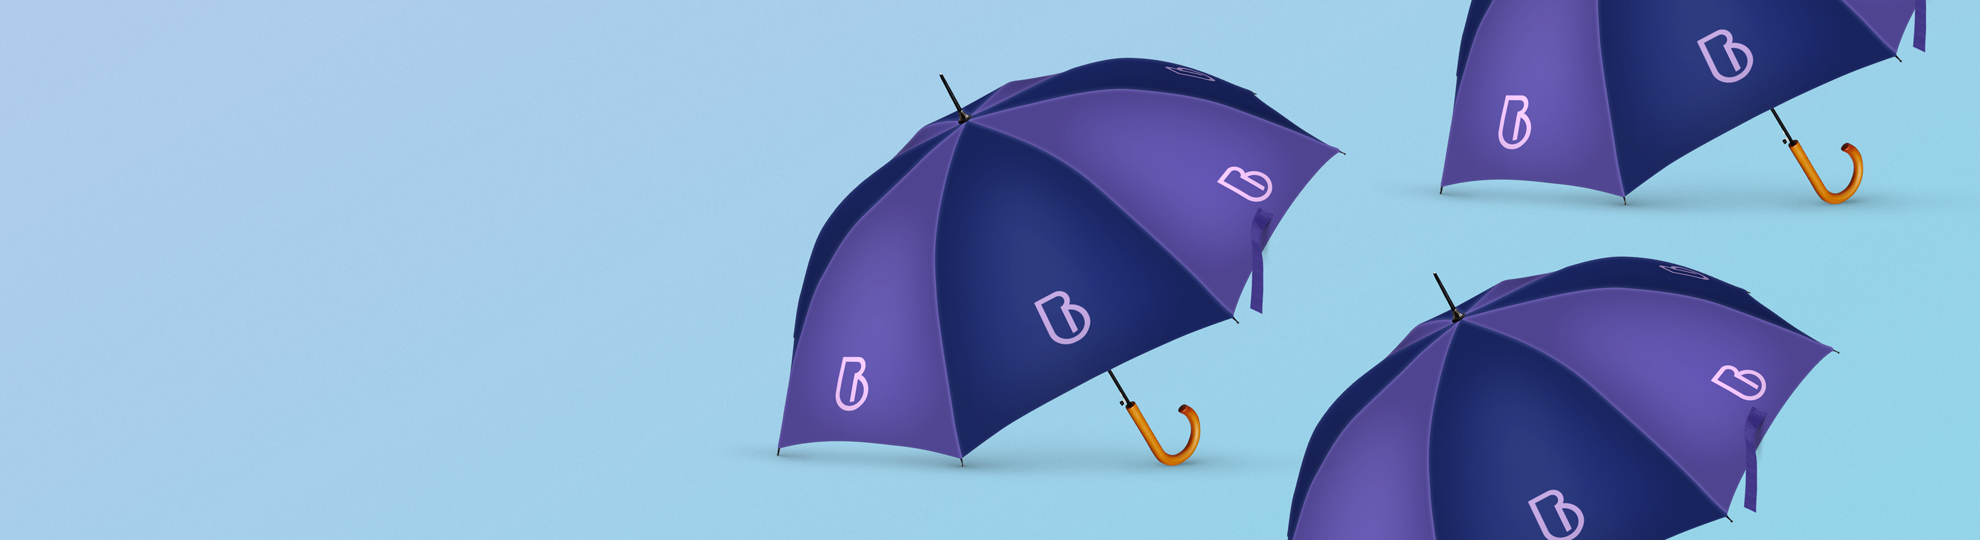 Parapluie personnalisé publicitaire cadeau entreprise